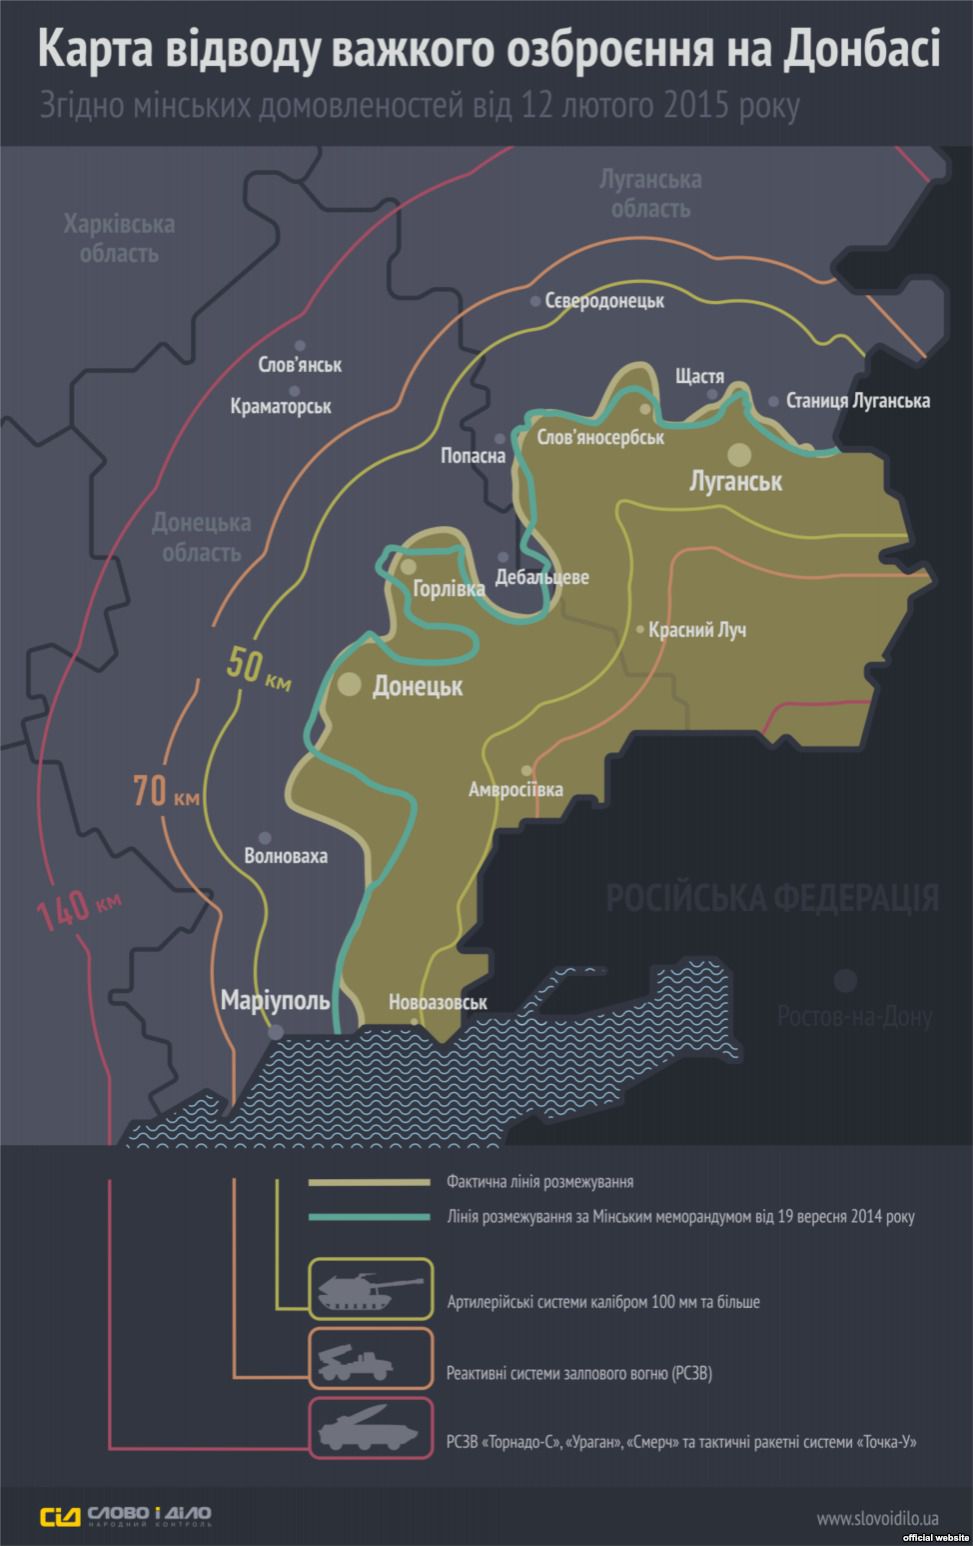 Сьогодні має розпочатися відведення важких озброєнь з Донбасу. Інфографіка. В неділю, 22 лютого, на Донбасі почнеться відведення важкого озброєння від лінії розмежування.
